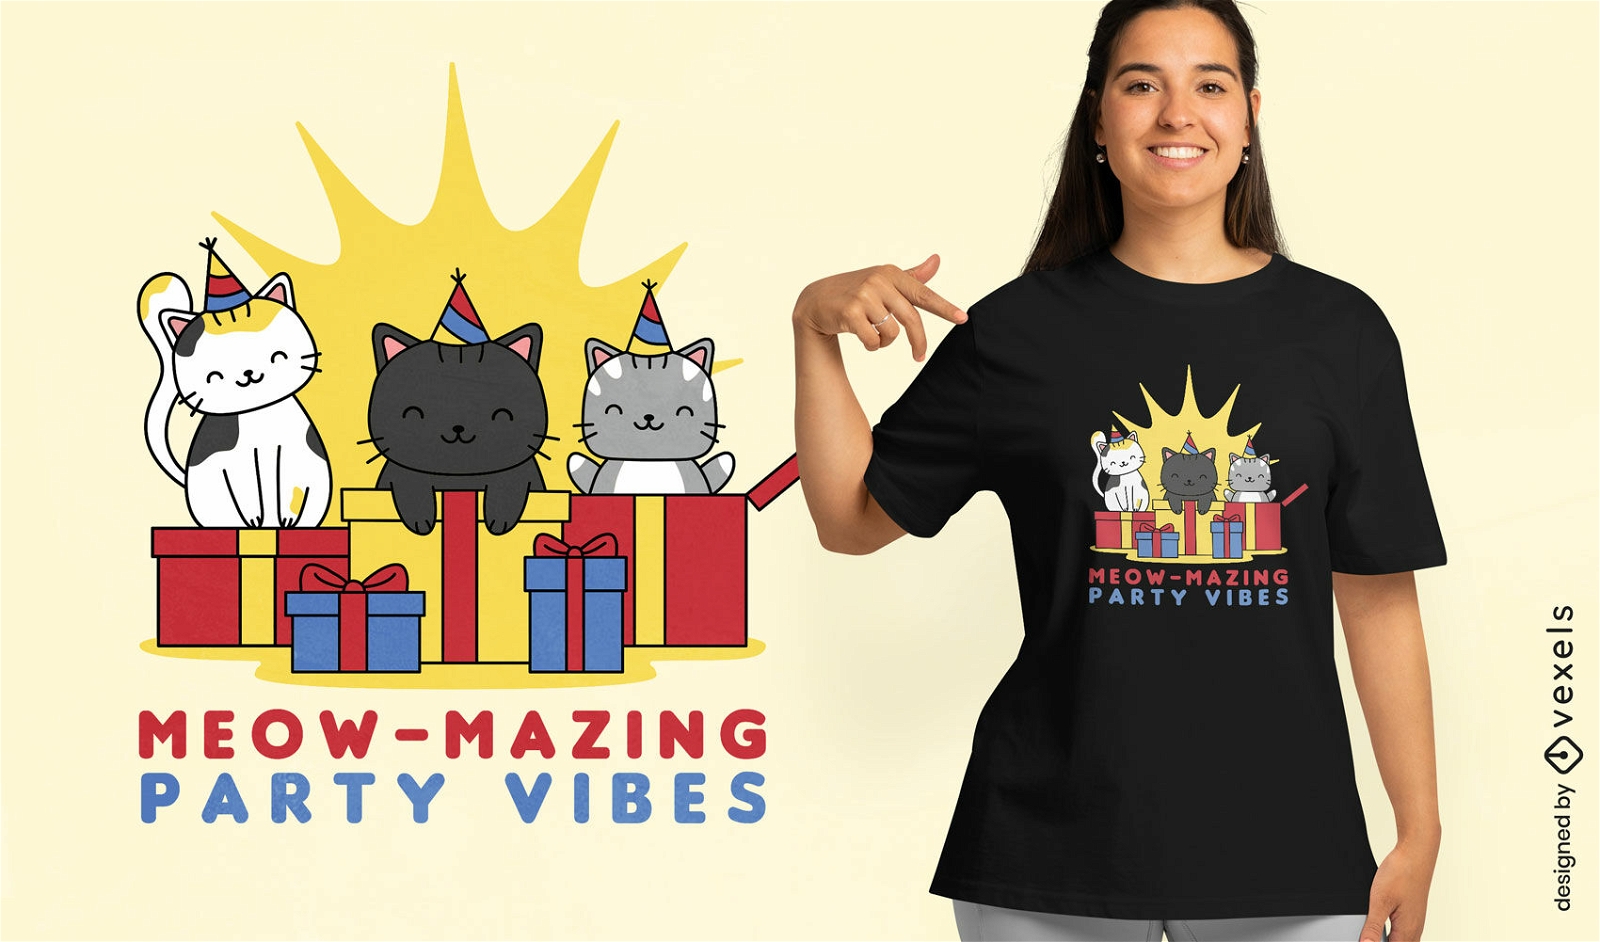 Party cats celebration t-shirt design